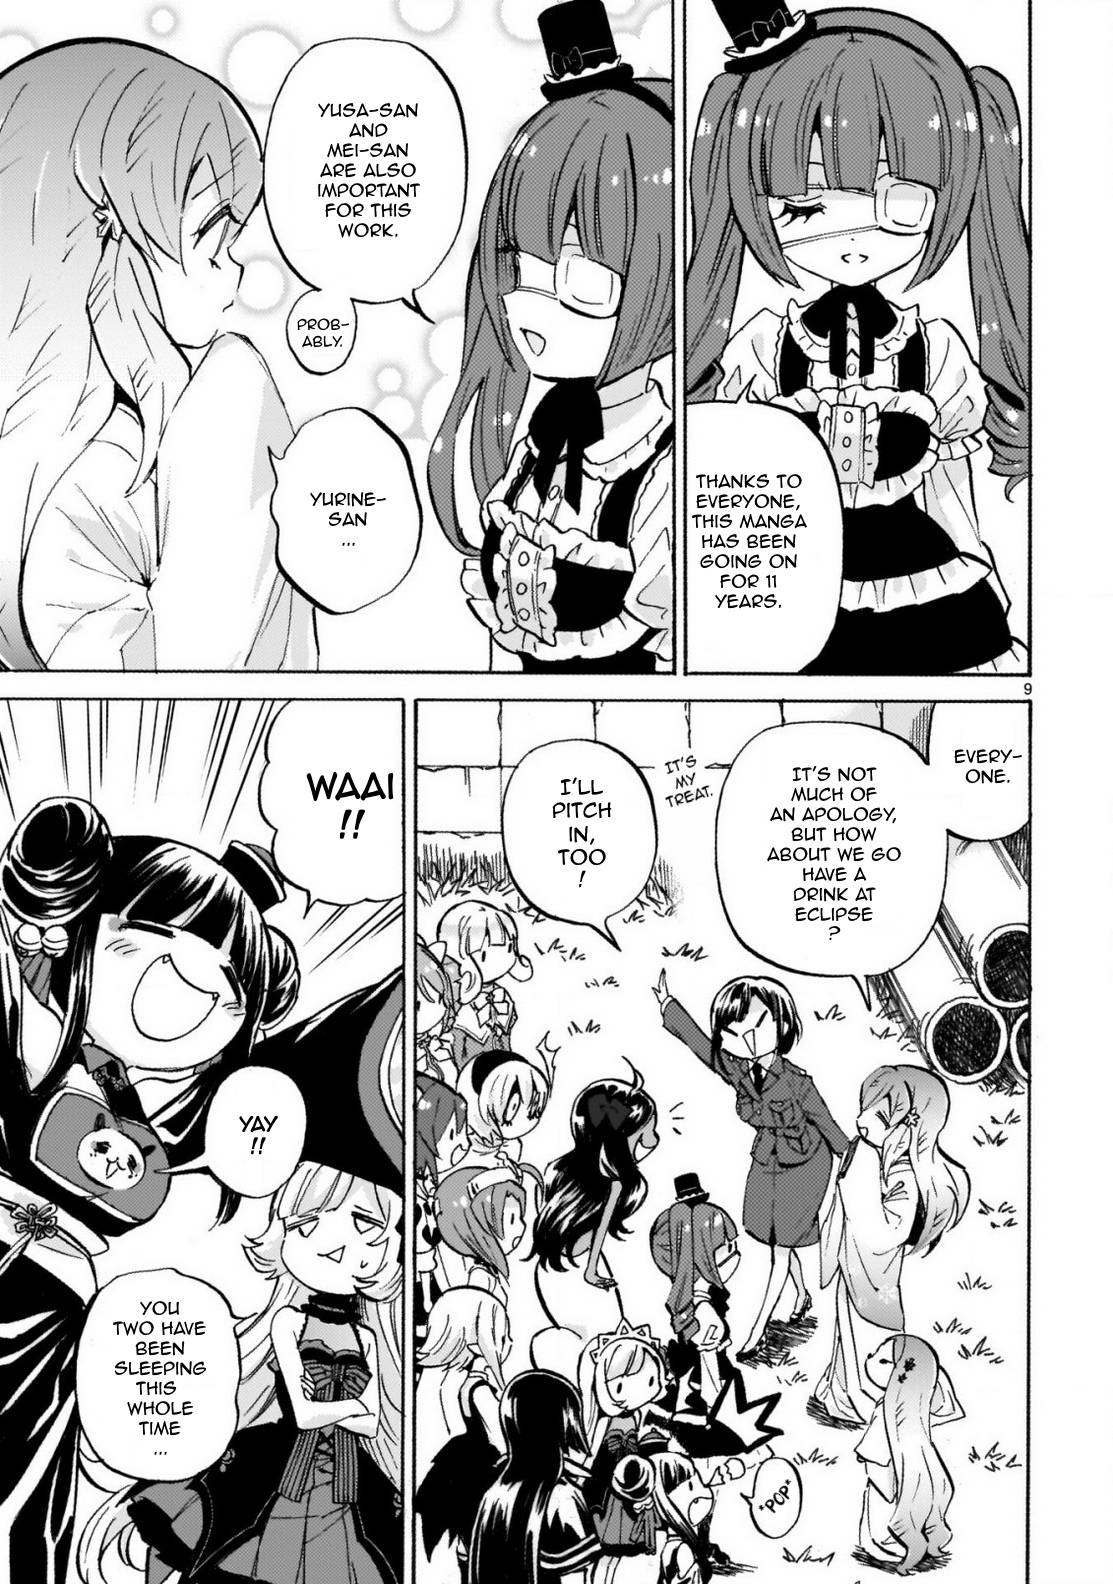 Jashin-chan Dropkick chapter 239 page 9